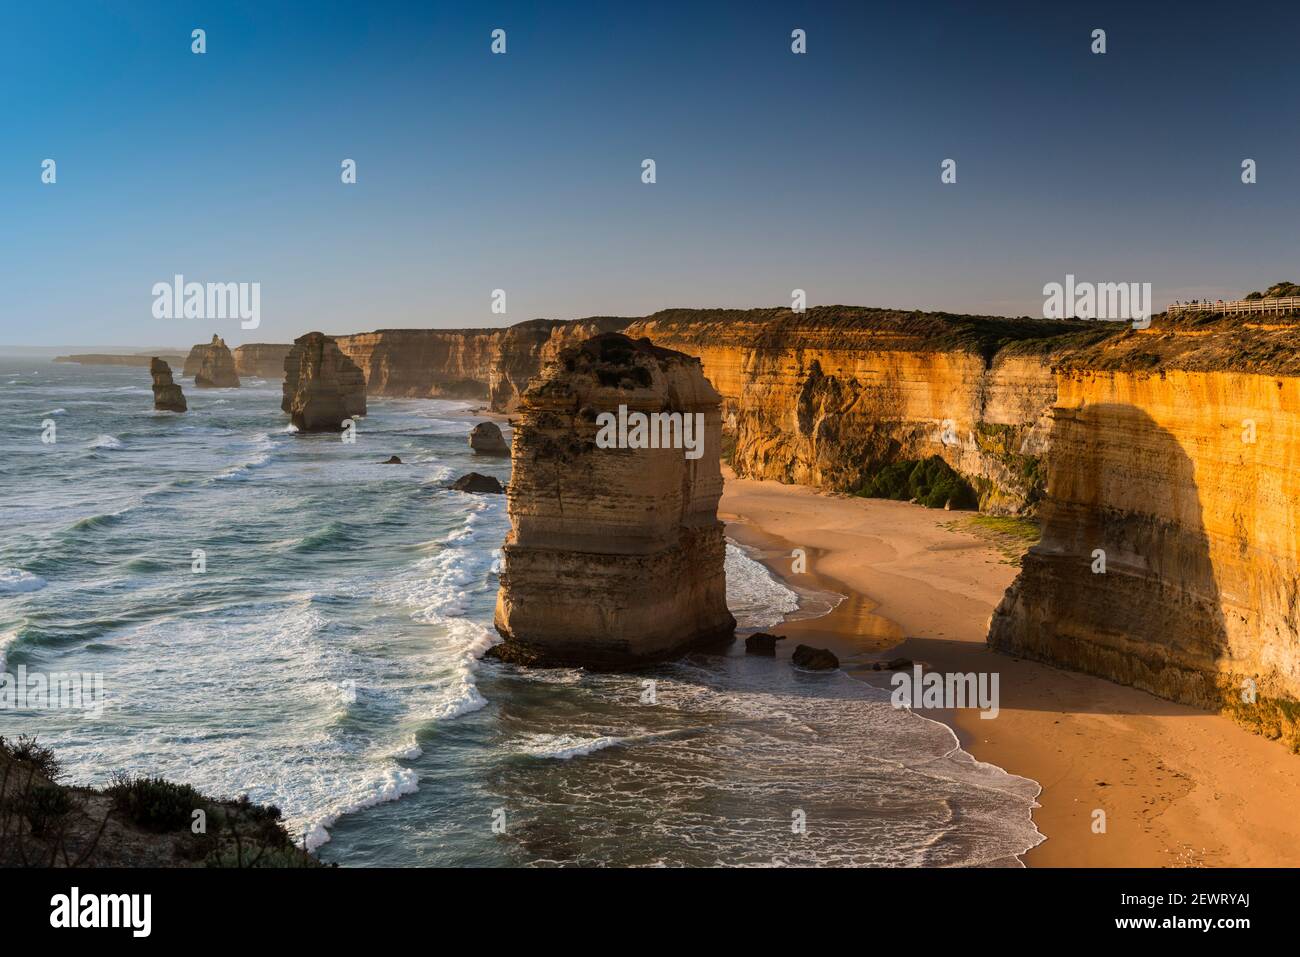 Alcuni dei dodici Apostoli, il Parco Nazionale dei dodici Apostoli, Port Campbell, Victoria, Australia, Pacifico Foto Stock